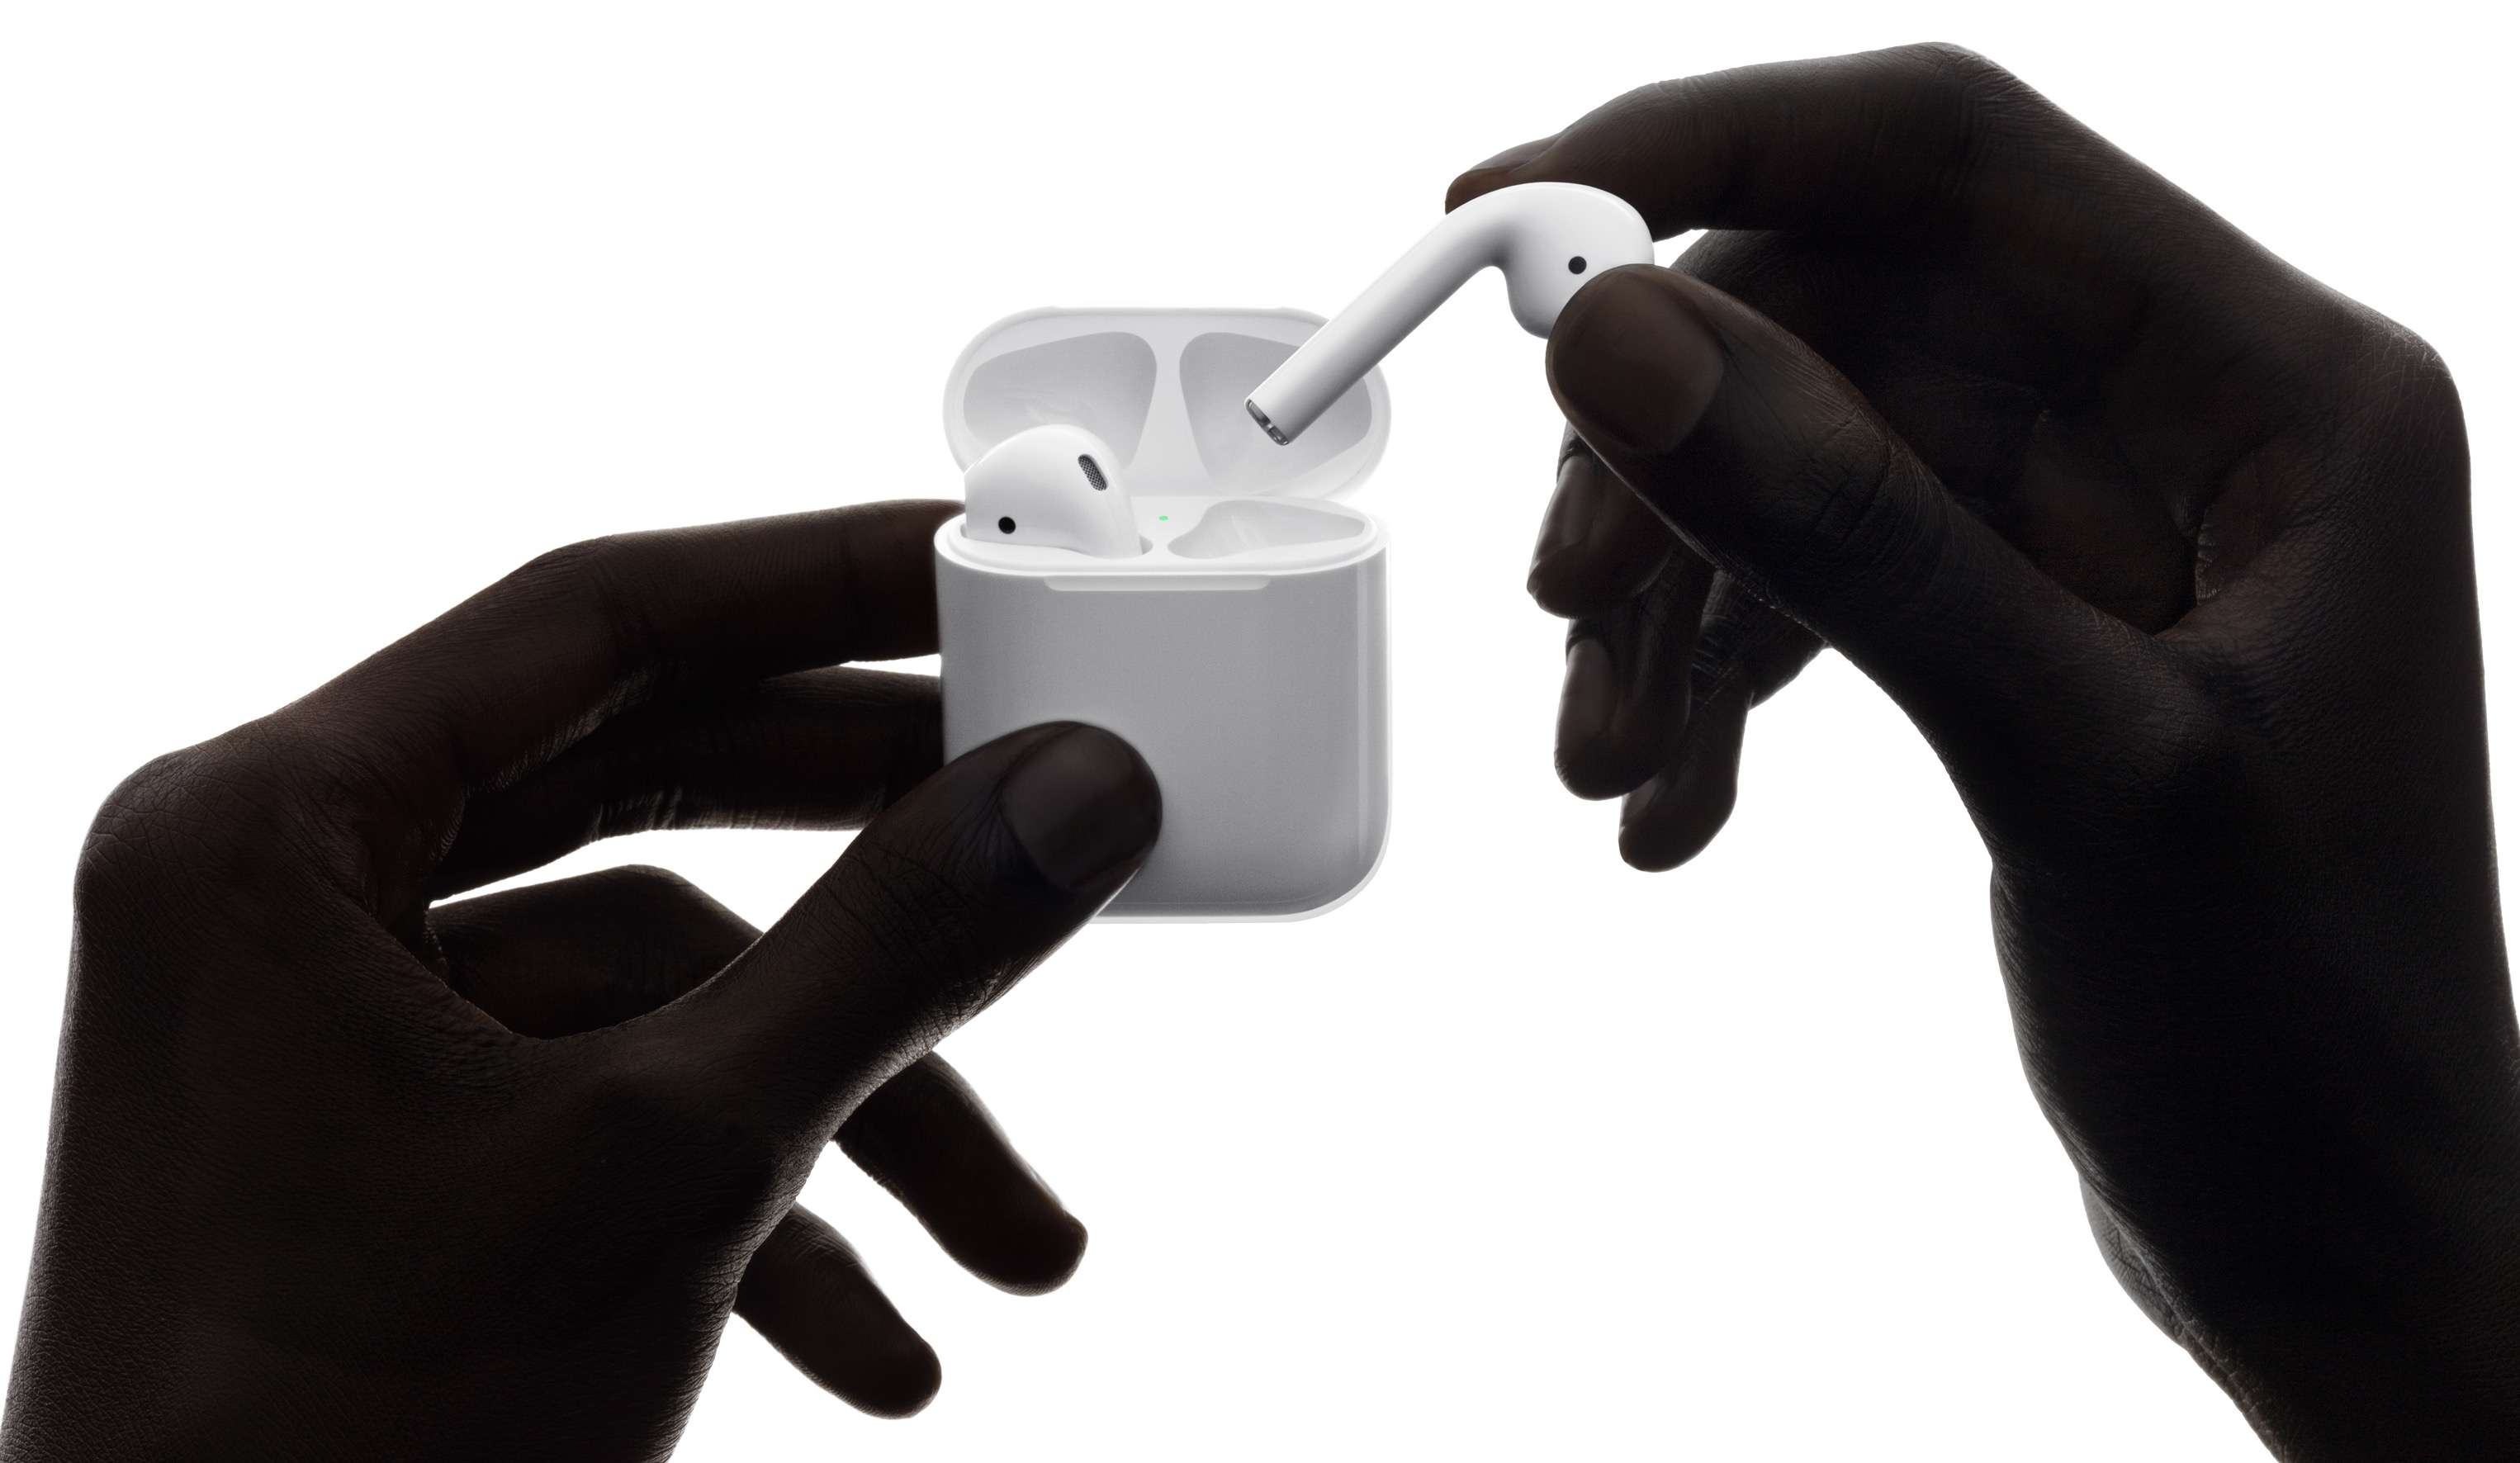 Case sạc không dây AirPods có thể sẽ ra mắt vào cuối năm nay và sạc được qua iPhone